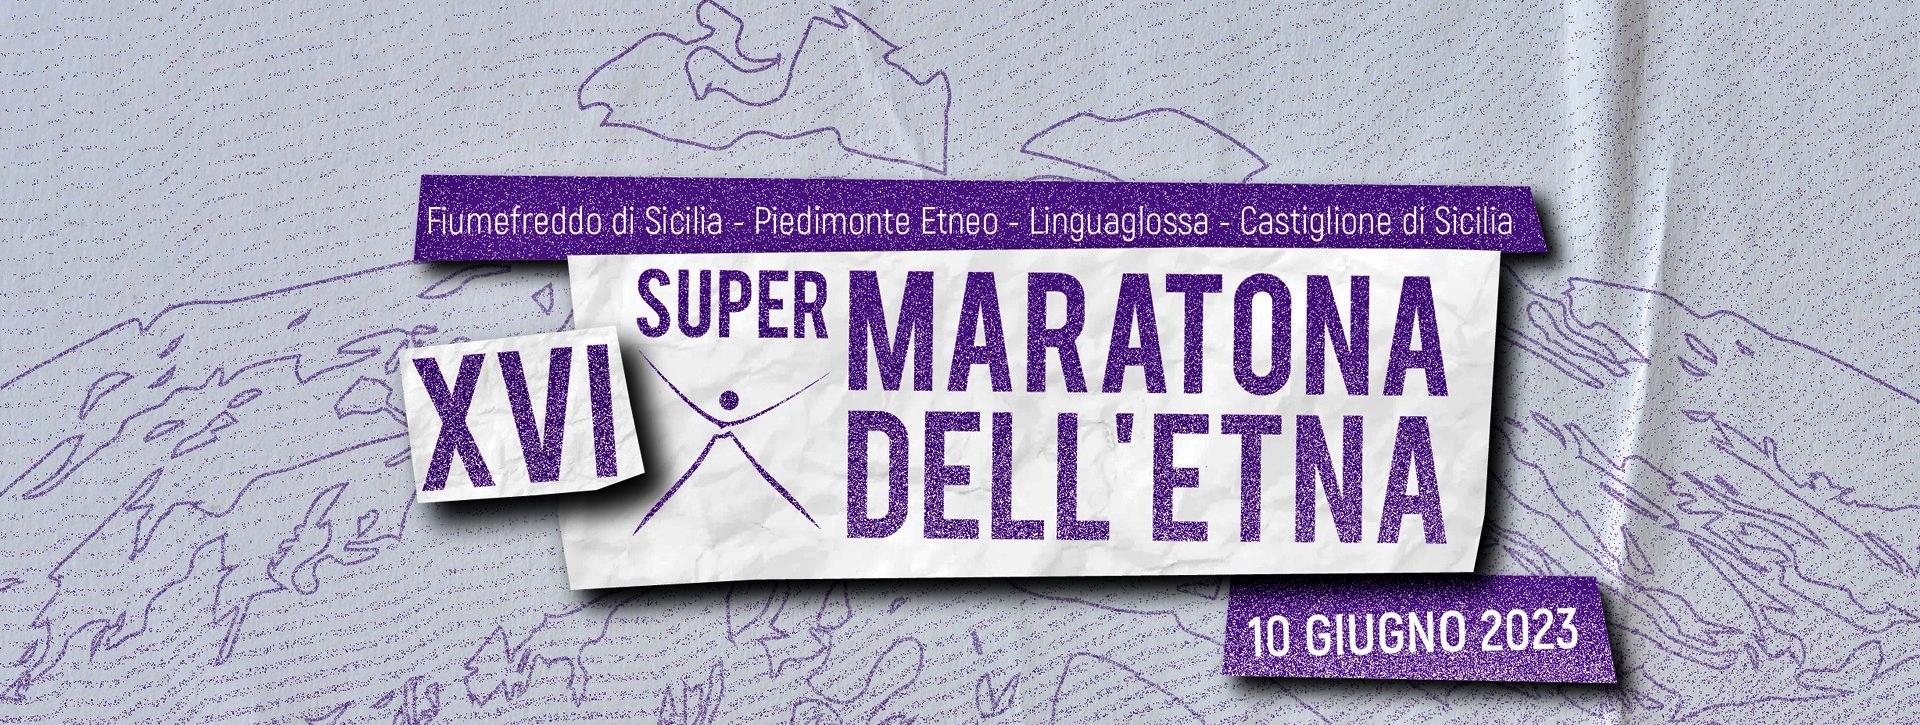 Super Maratona Etna 0 3000